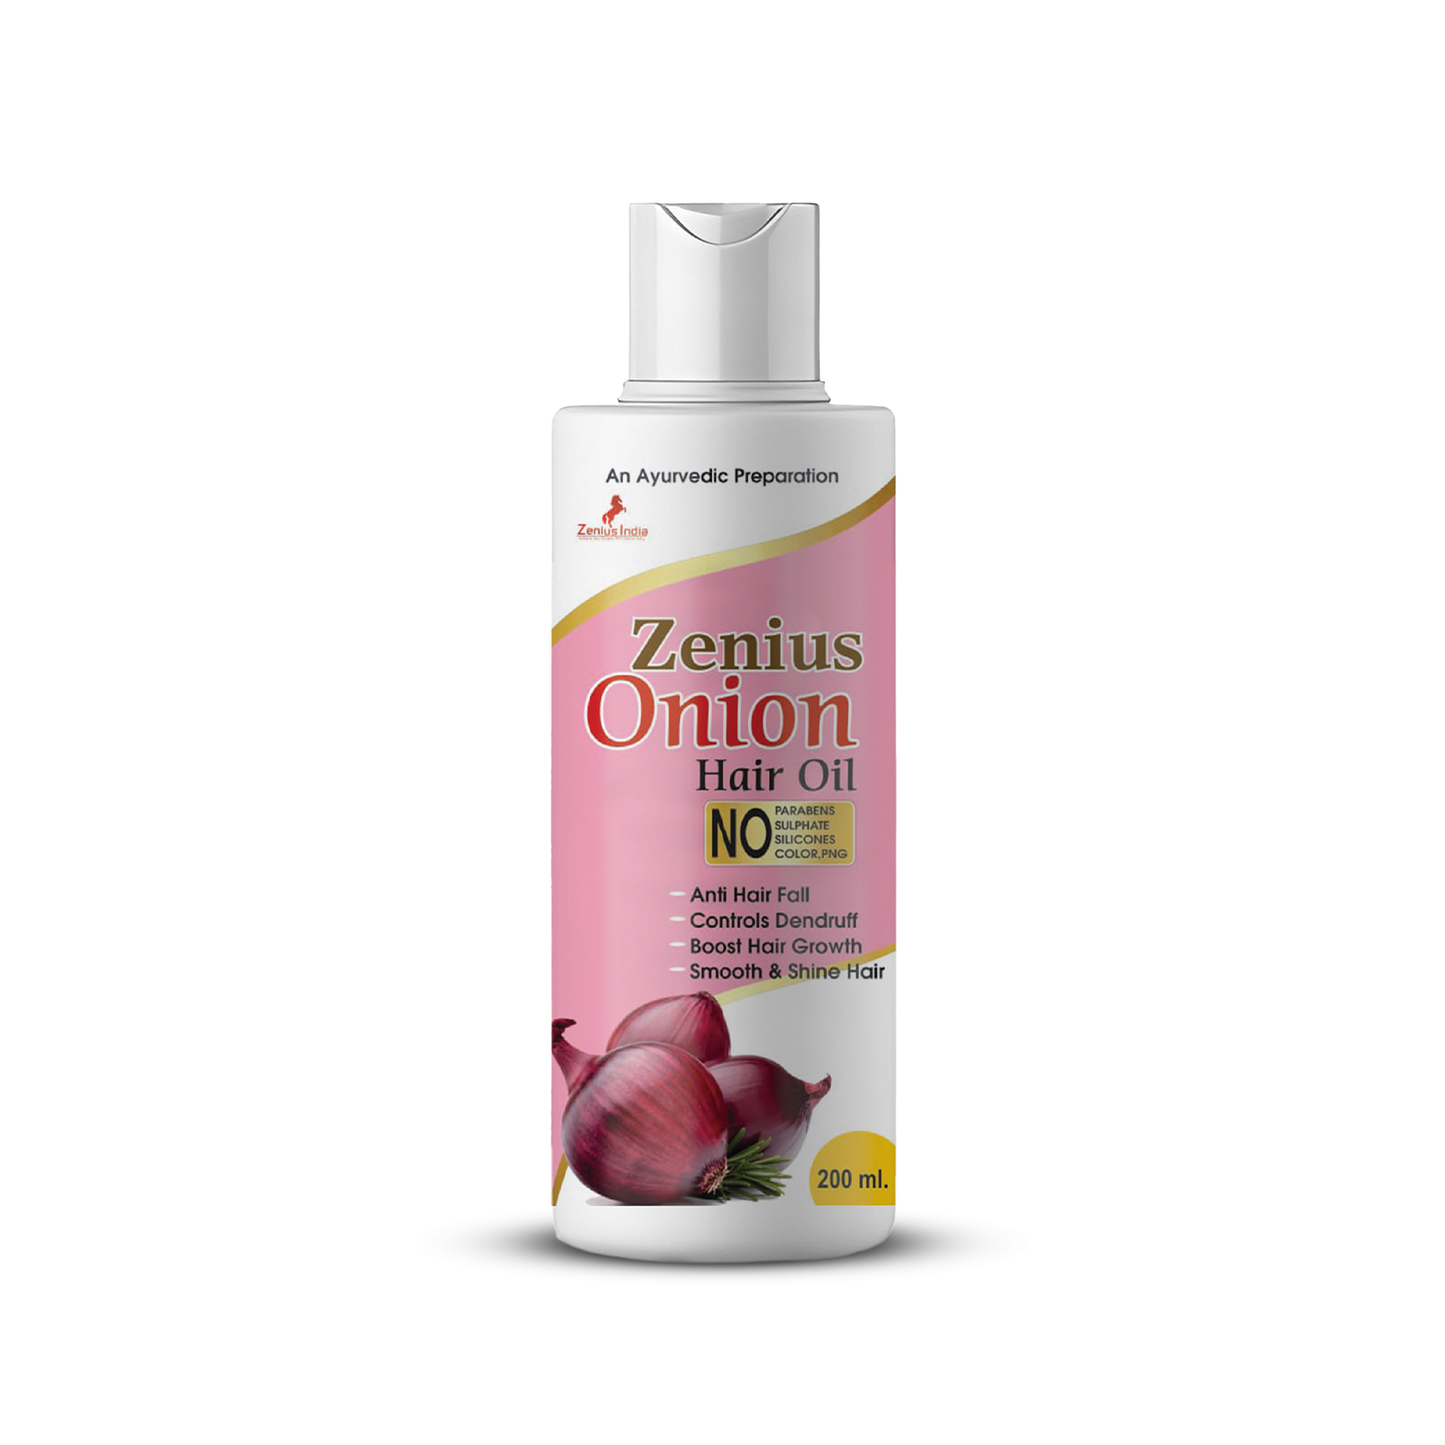 Zenius Onion Hair Oil For Men & Women, 200ml